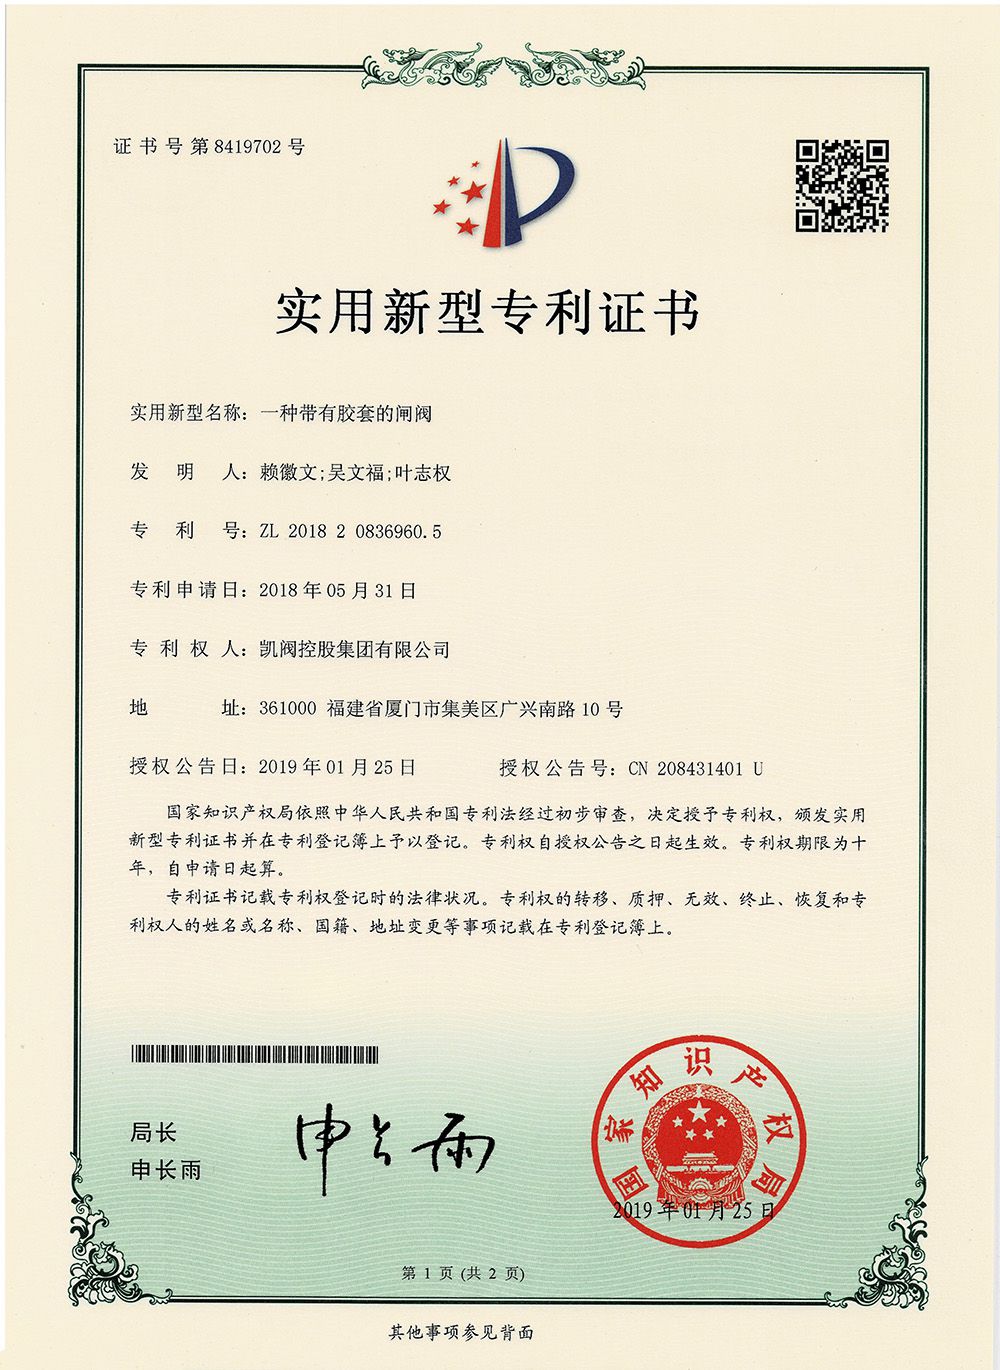 一种带有胶套的闸阀<br />中国实用型专利证书<br />（ZL 2014 2 0588747.9）